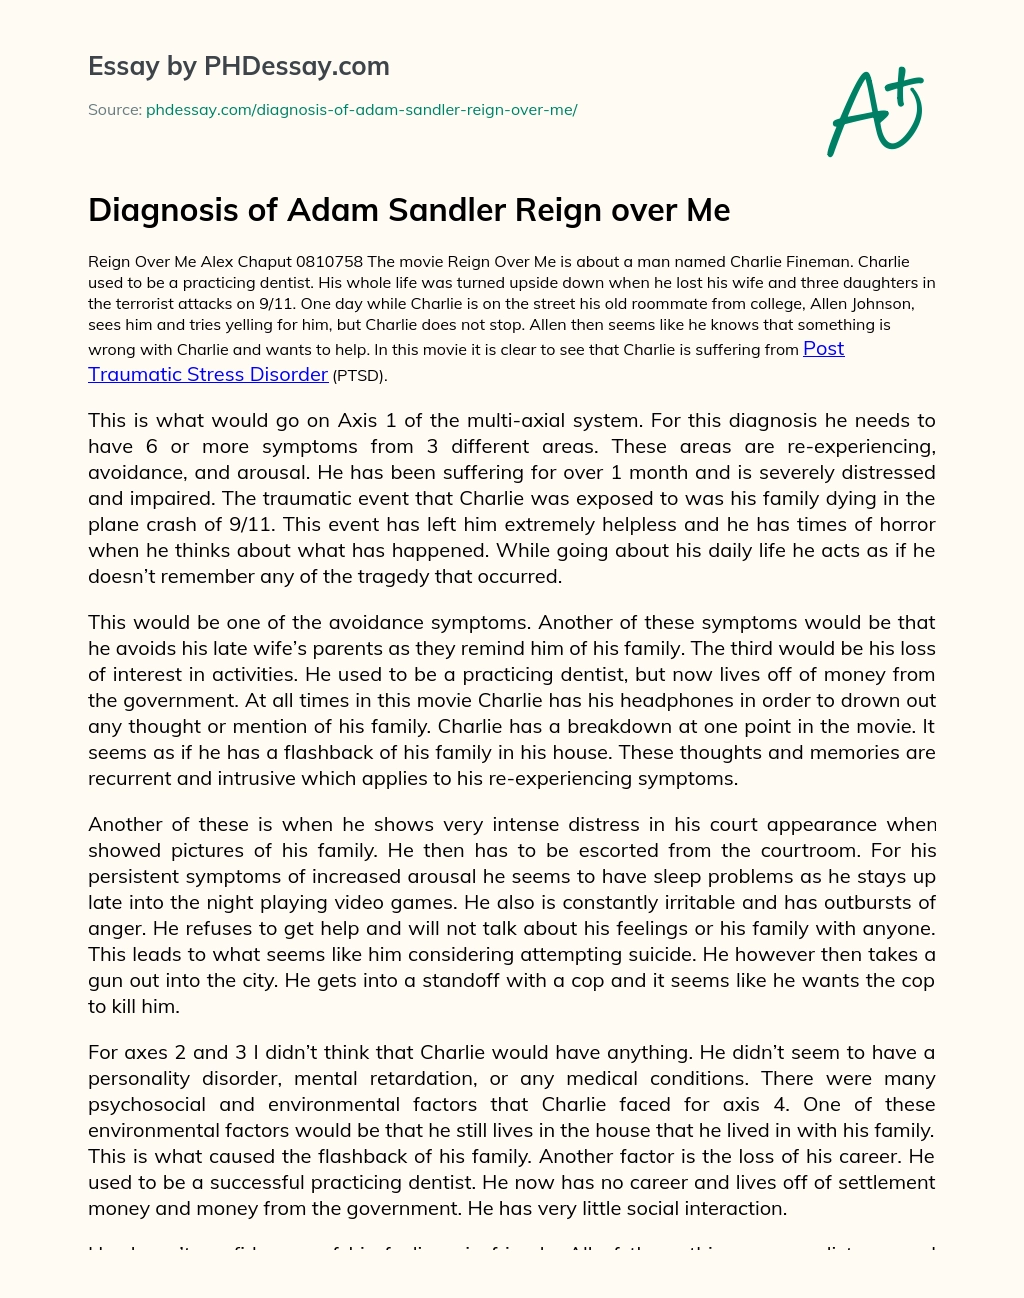 Diagnosis of Adam Sandler Reign over Me essay